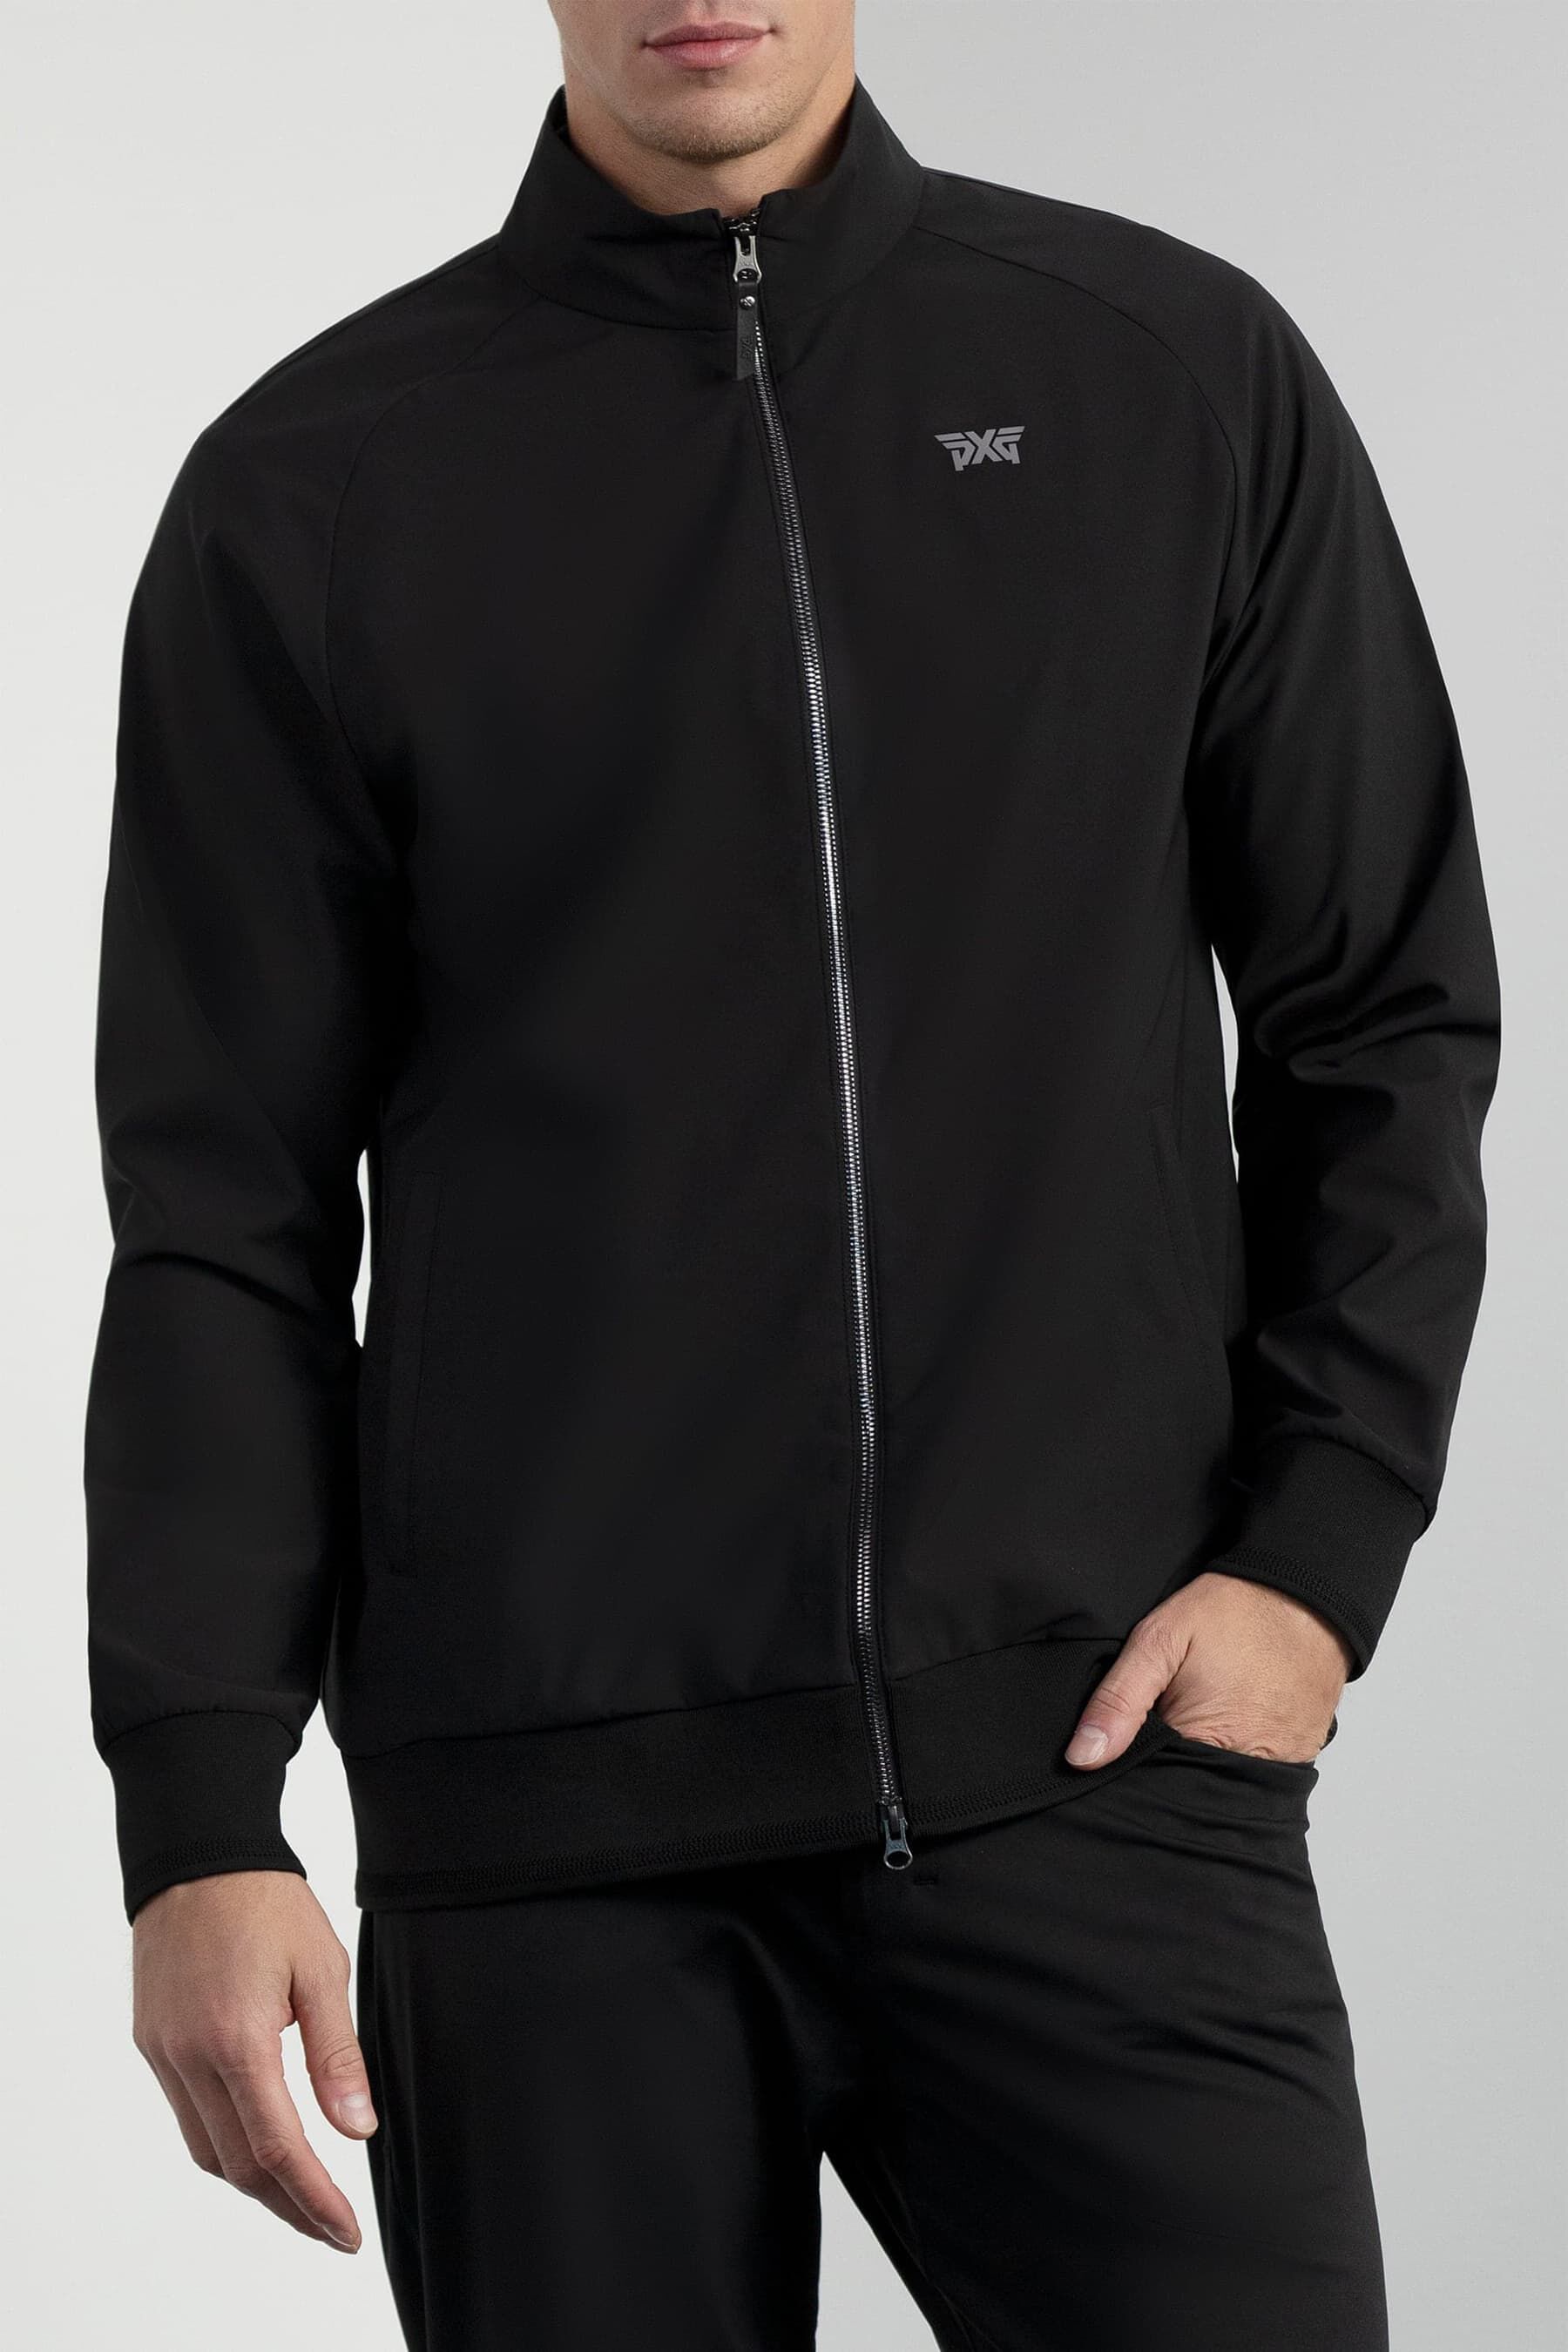 Buy Men's Full-Zip Performance Jacket | PXG